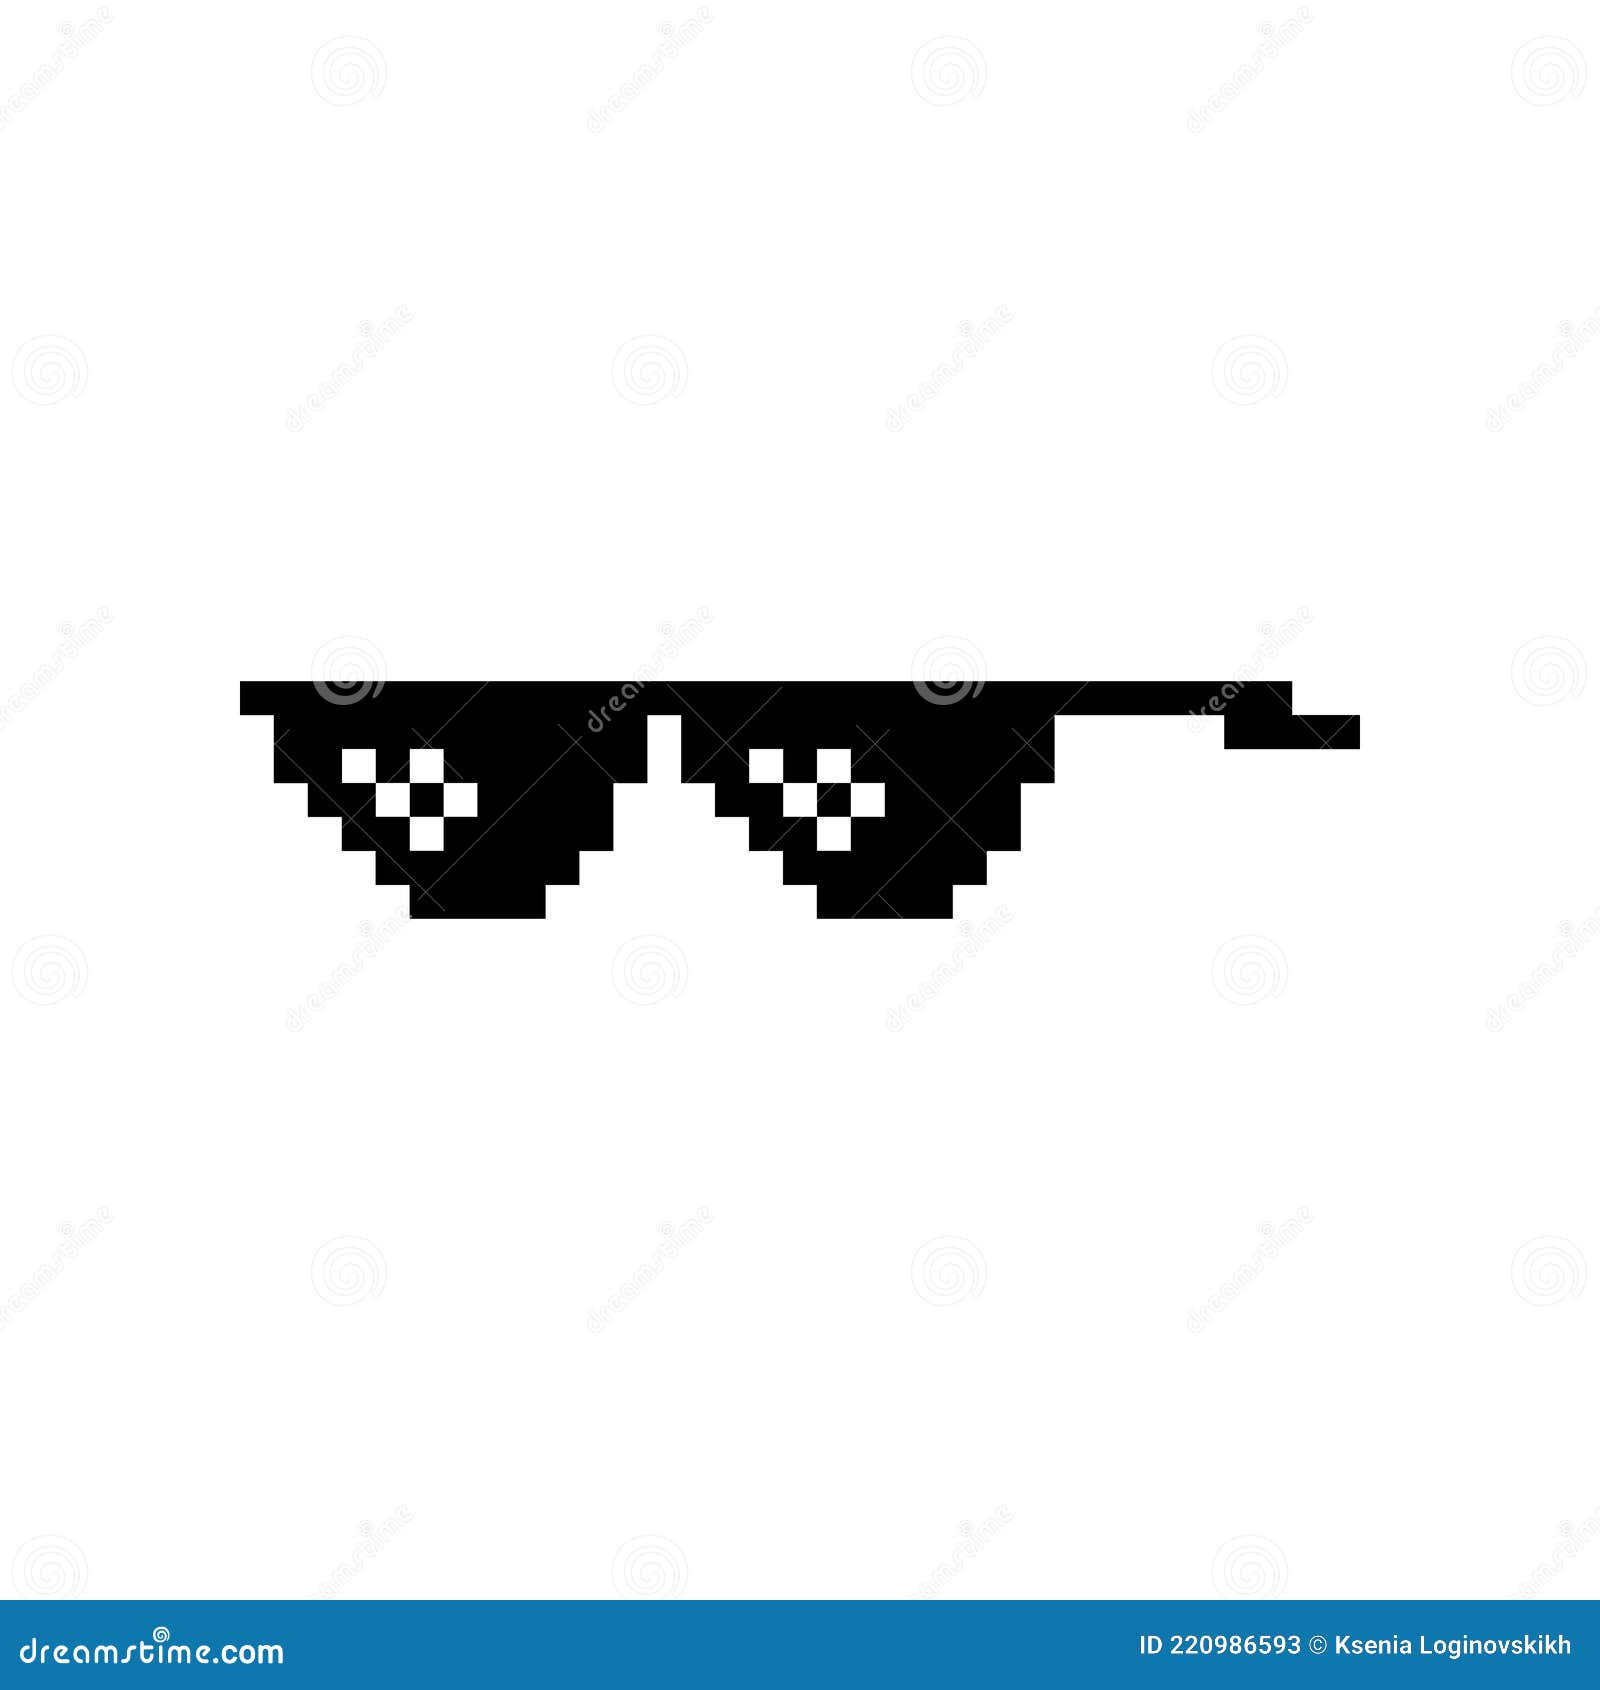 Boss Glasses Meme Vector Illustration. Thug Life Design Stock Vector ...